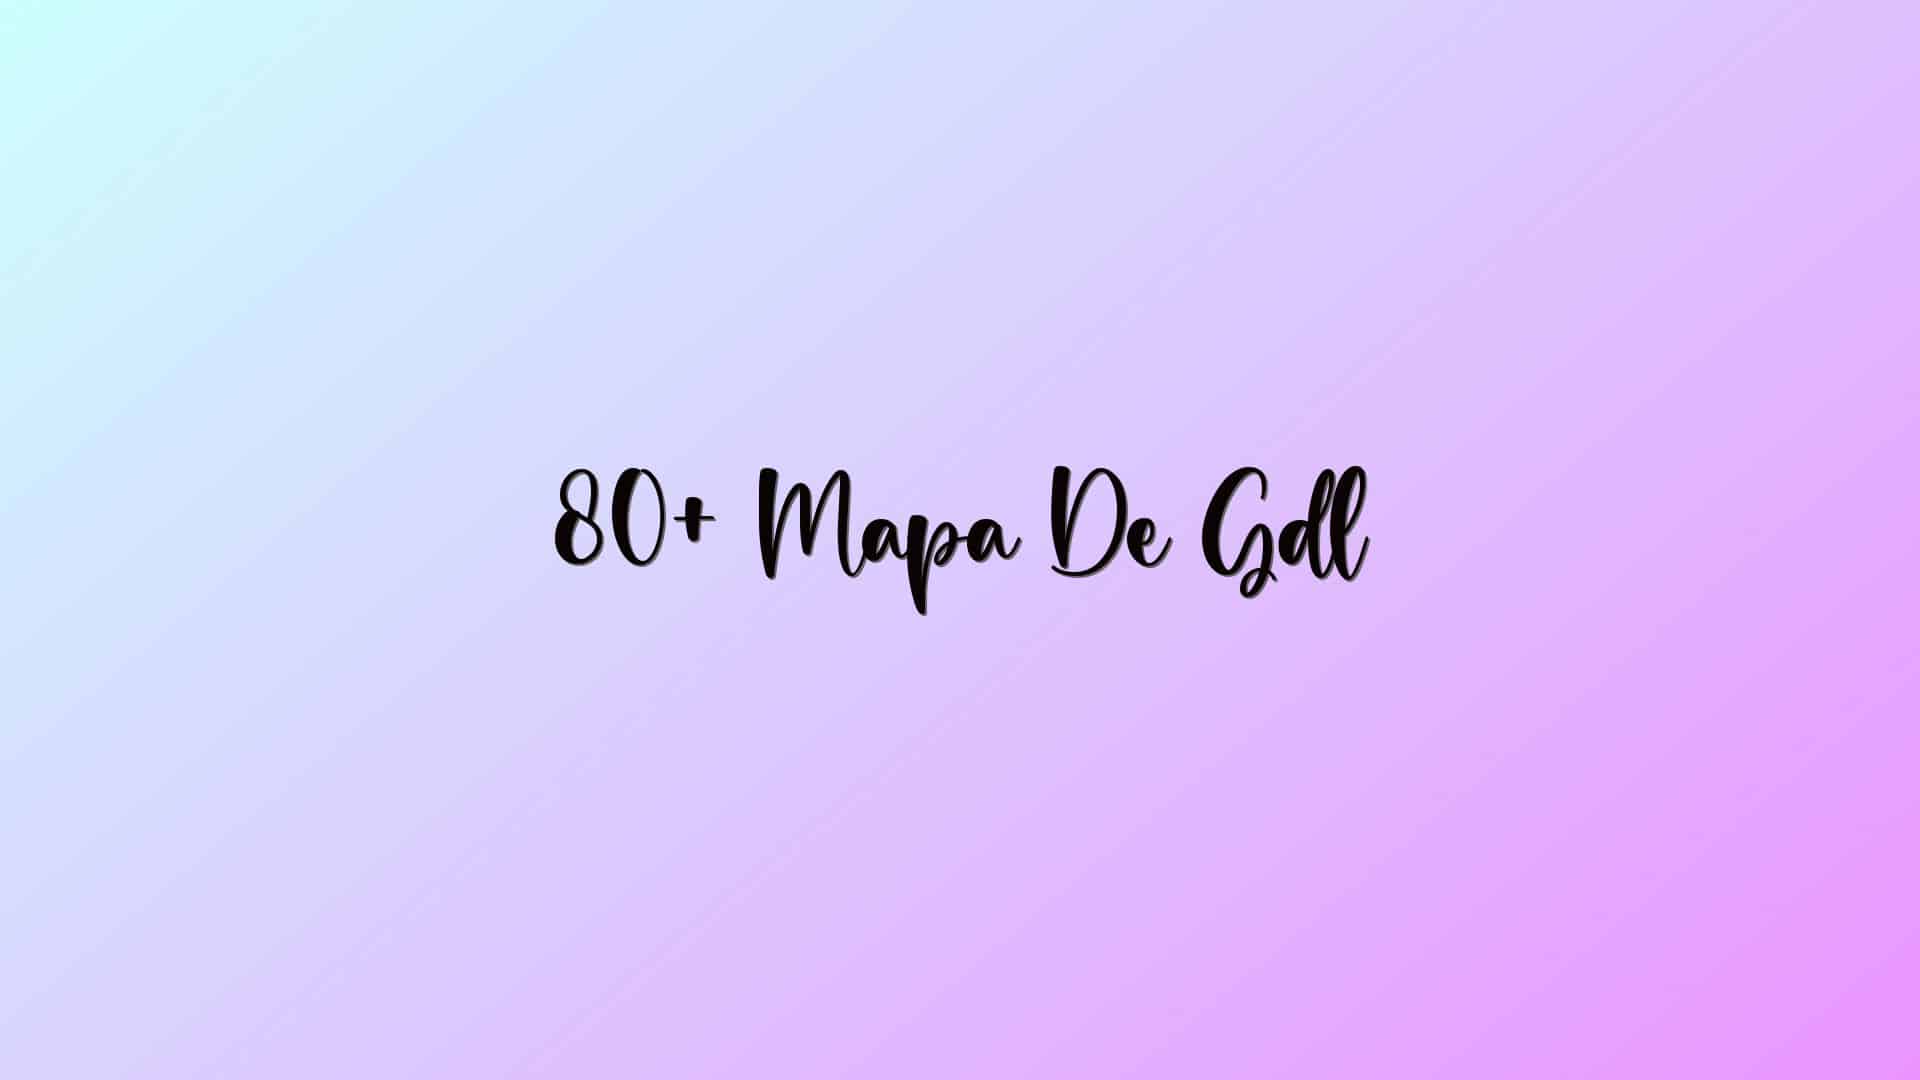 80+ Mapa De Gdl